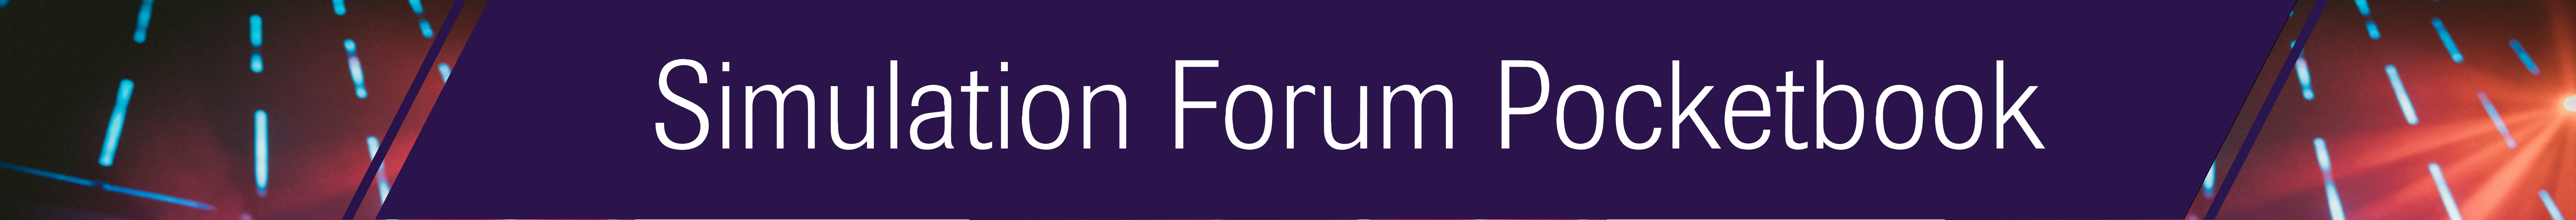 Simulation Forum Pocketbook banner-revised